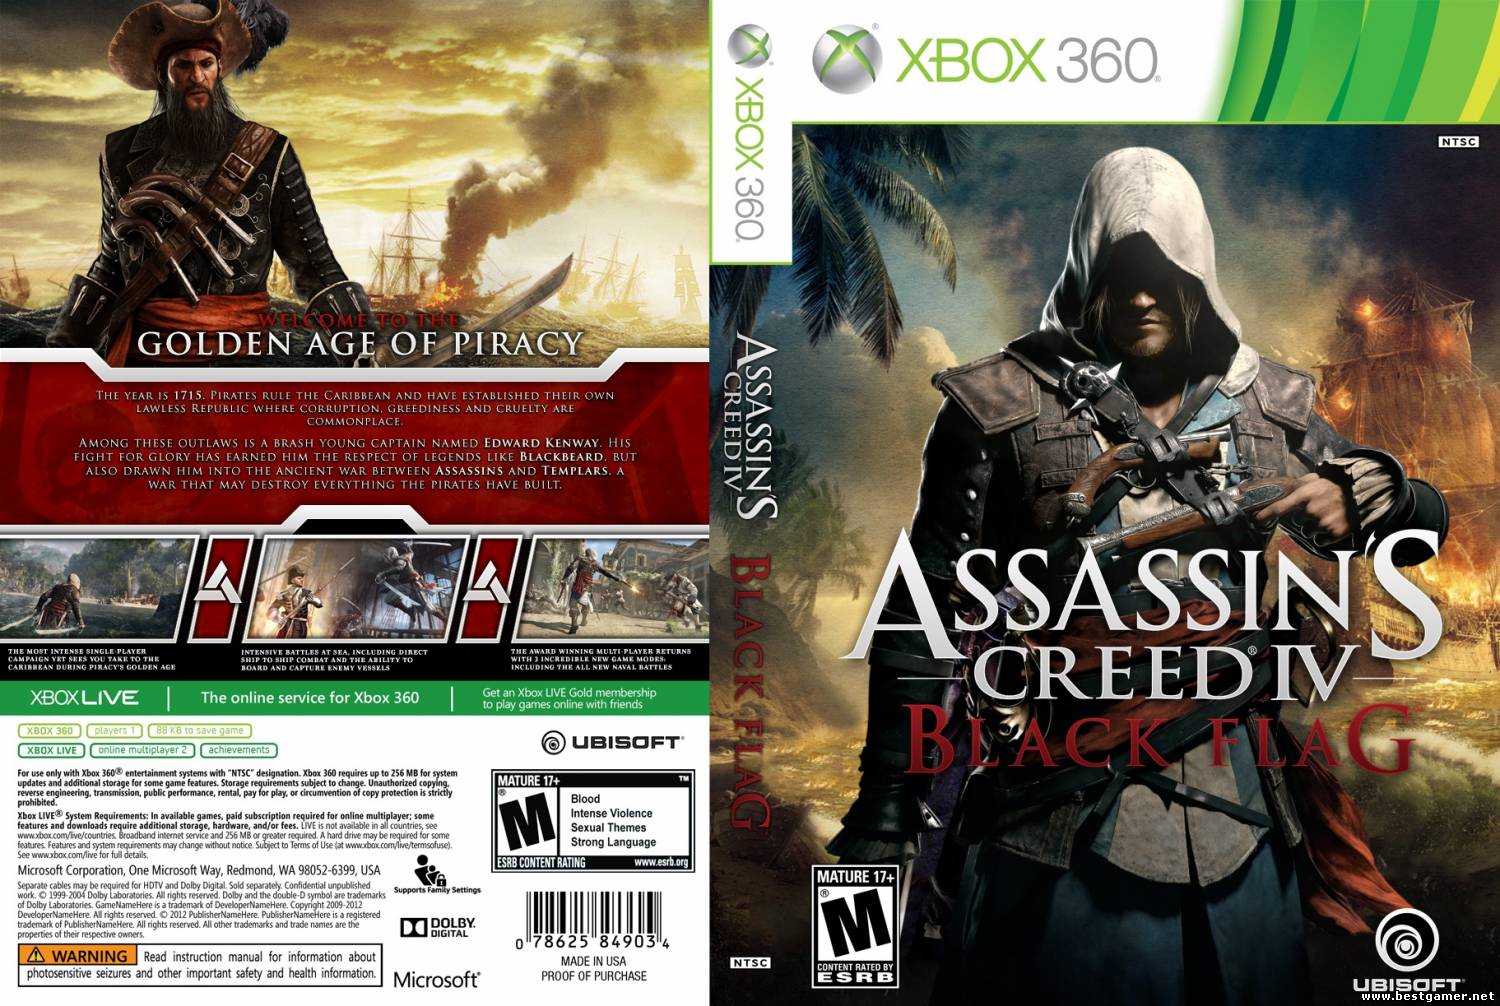 Xbox 360 прохождение игры. Обложки игр для Xbox 360. Ассасин Крид 4 обложка хбокс 360. Assassins Creed Black Flag Xbox 360 обложка. Обложки игр ассасин Крид 4 хбокс 360.